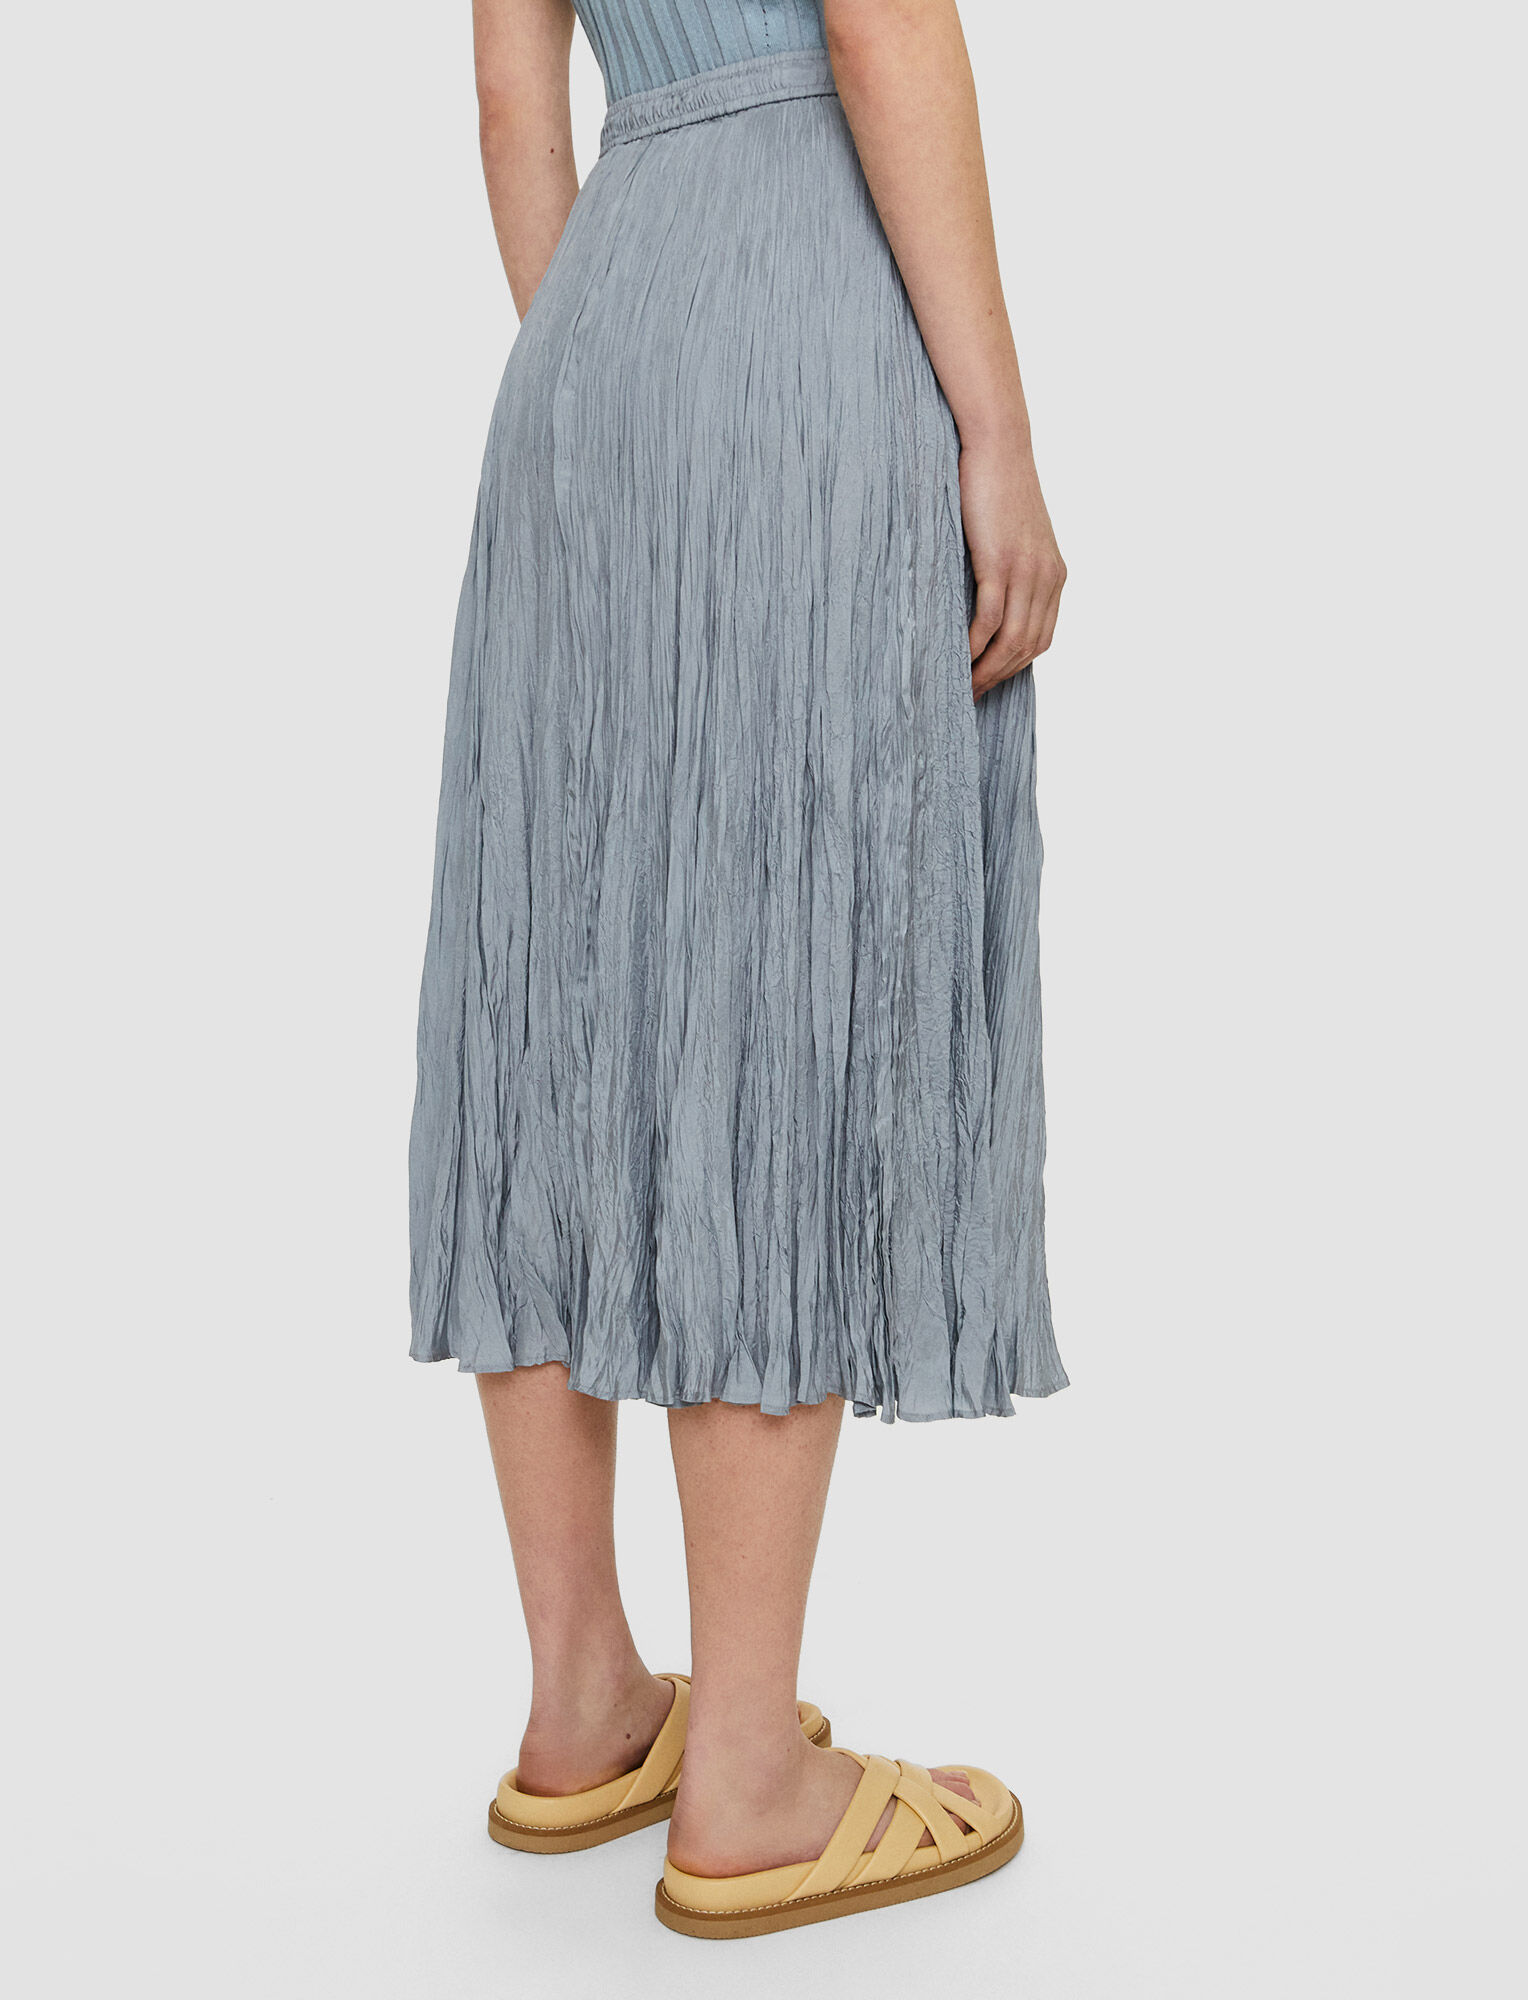 Joseph, Silk Habotai Sully Skirt – Shorter Length, in Dusty Blue